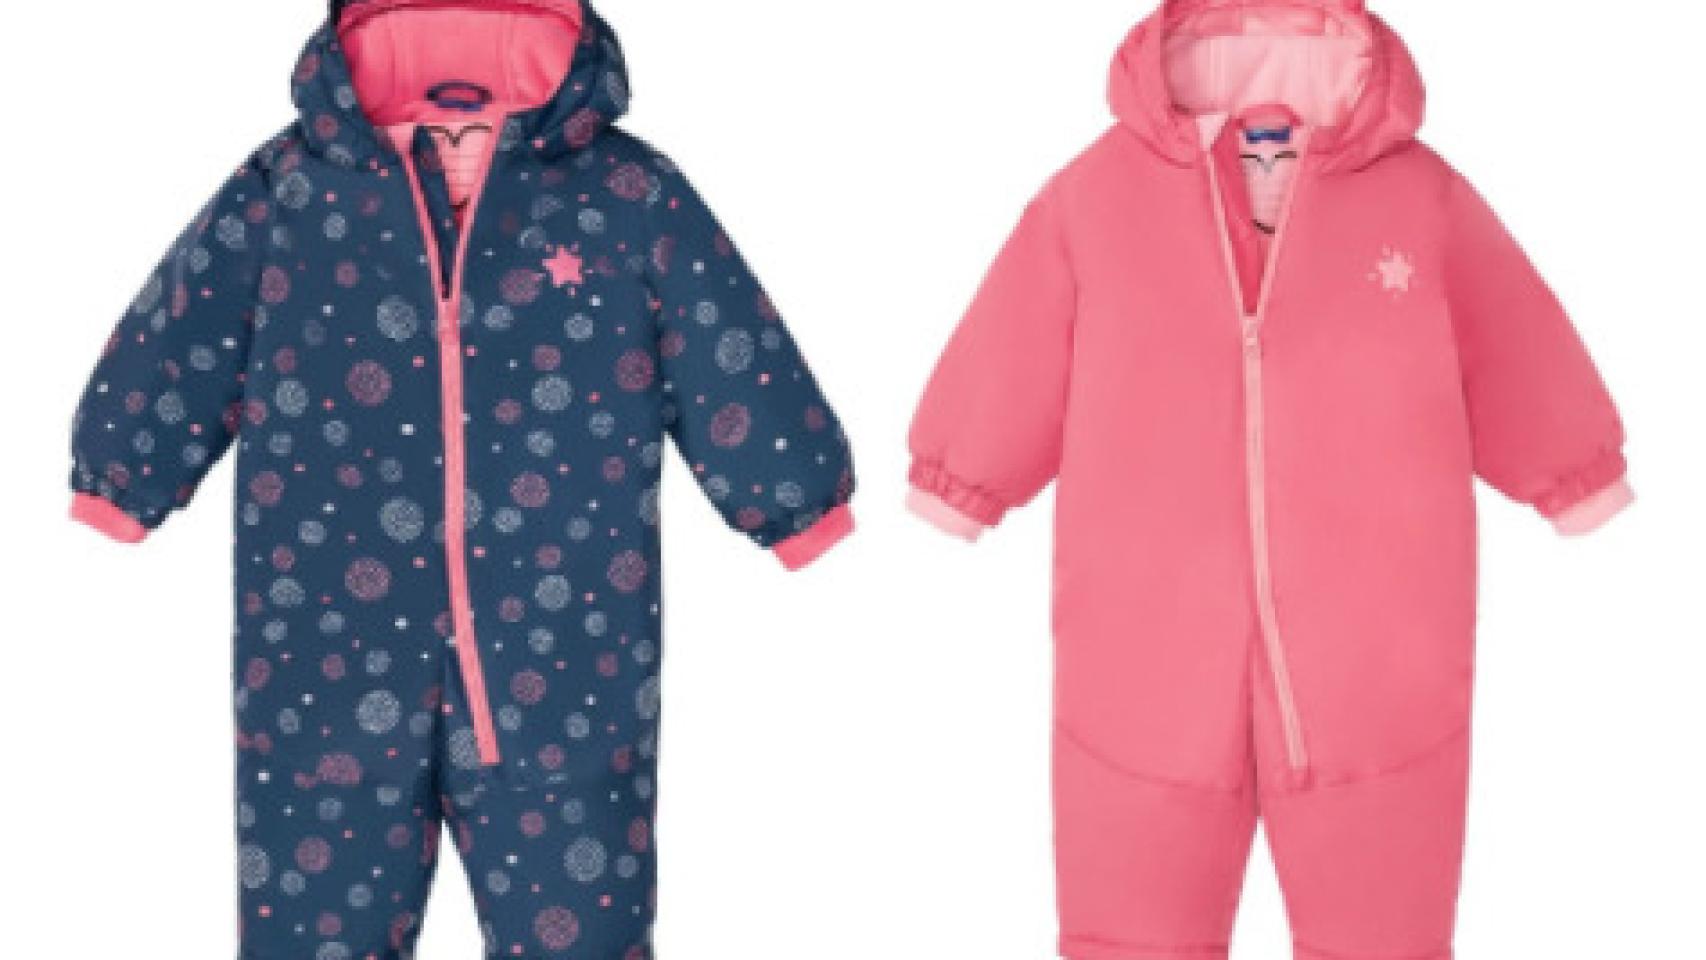 La nueva de ropa de esquí de desde euros: pantalones para nieve, chaquetas, botas…